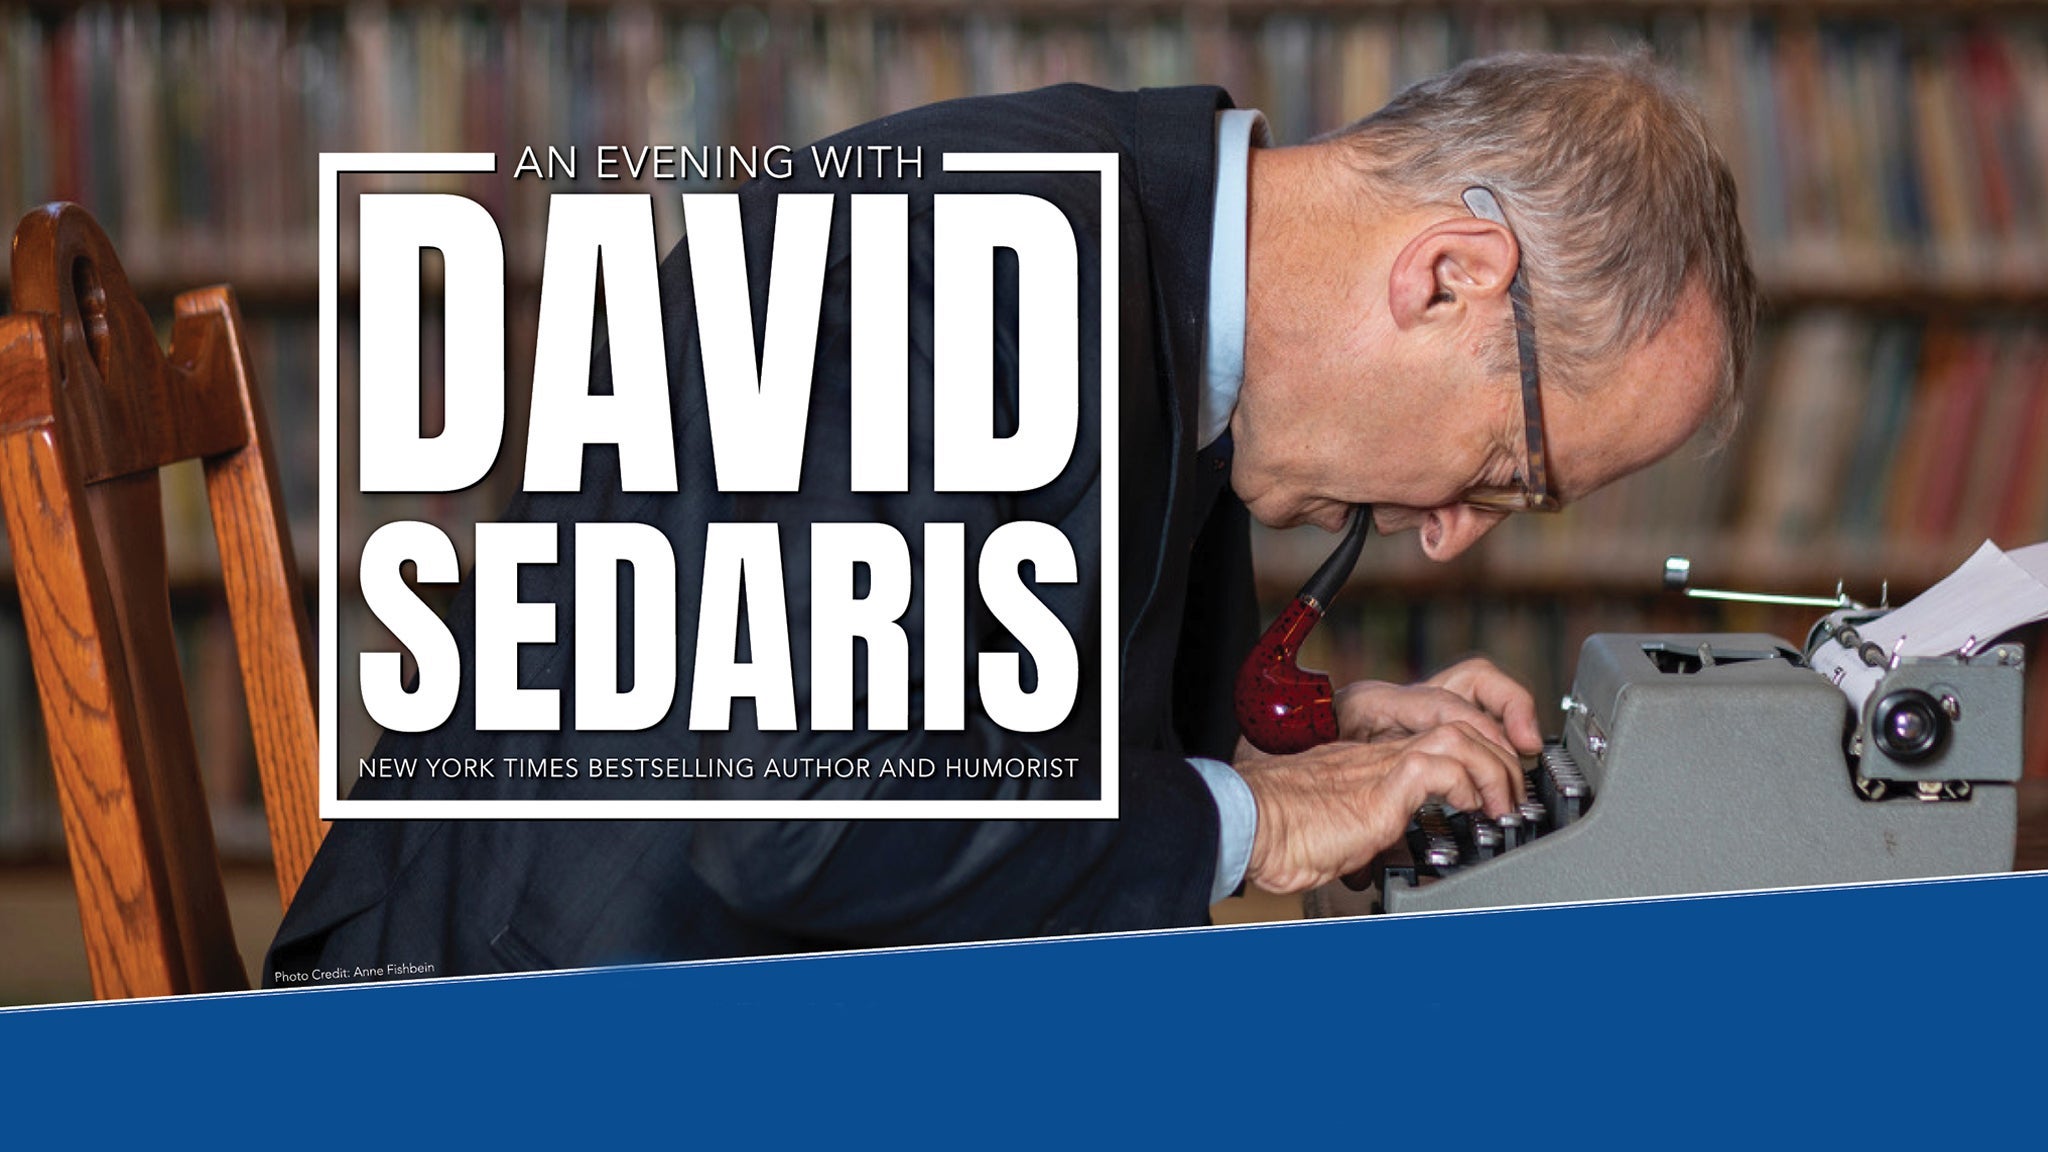 An Evening With David Sedaris at The Pasadena Civic